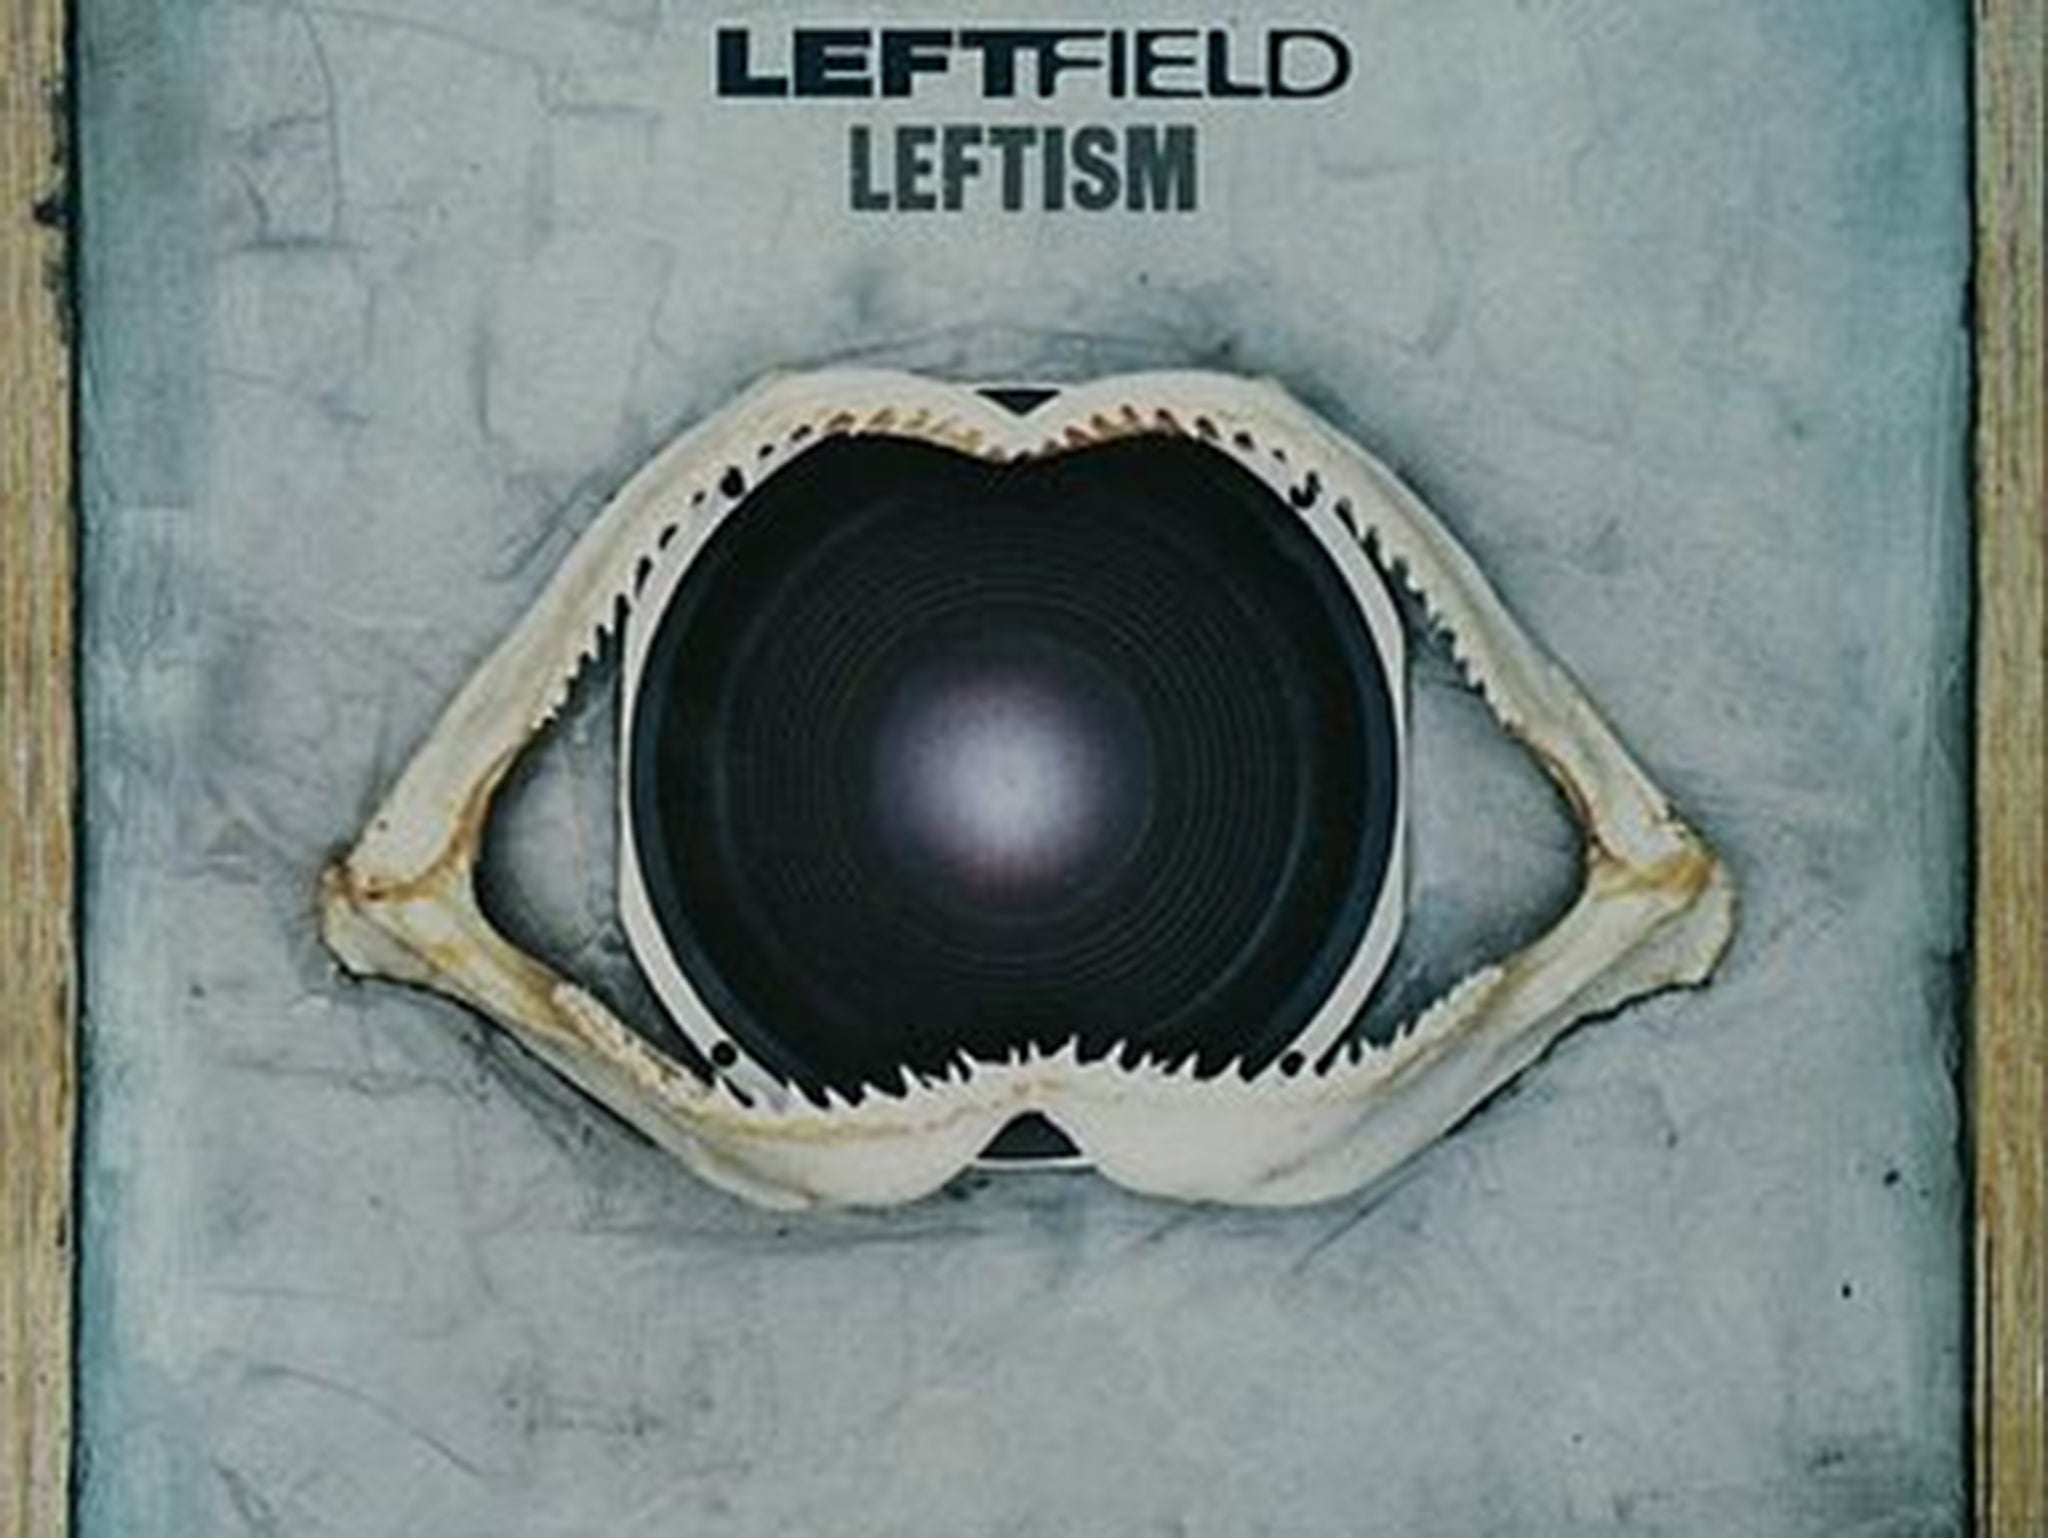 Leftfield 'Leftism'